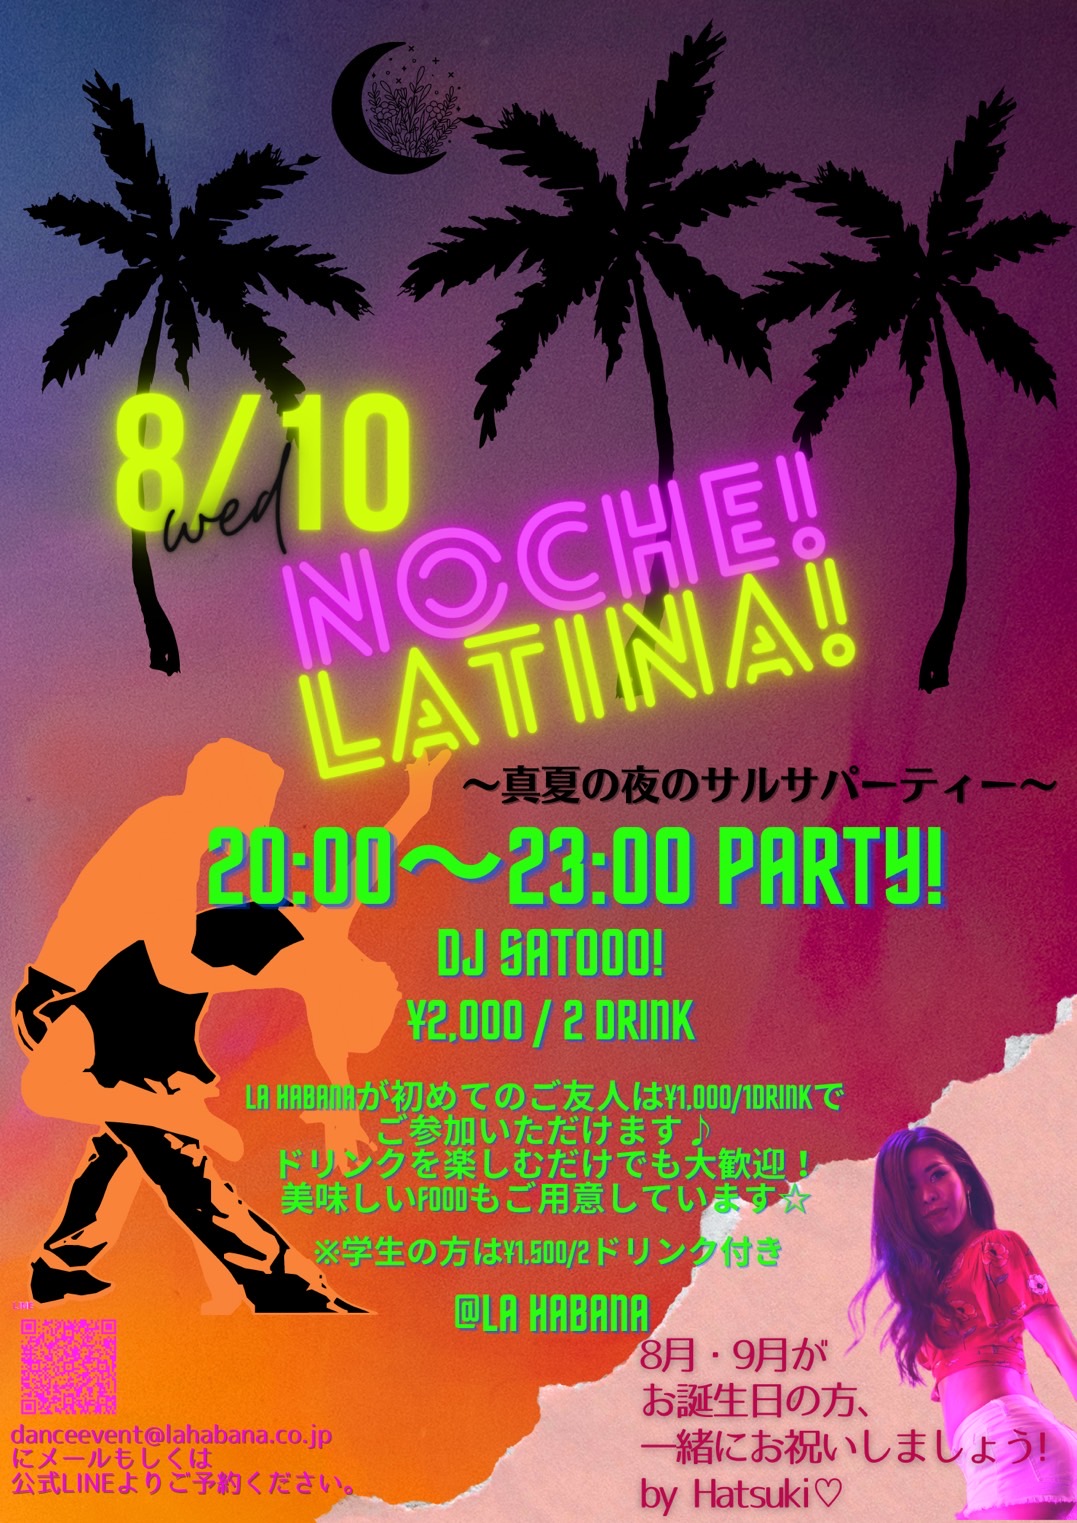 8月10日(水) Noche Latina! ～真夏の夜のサルサパーティー(名古屋)～